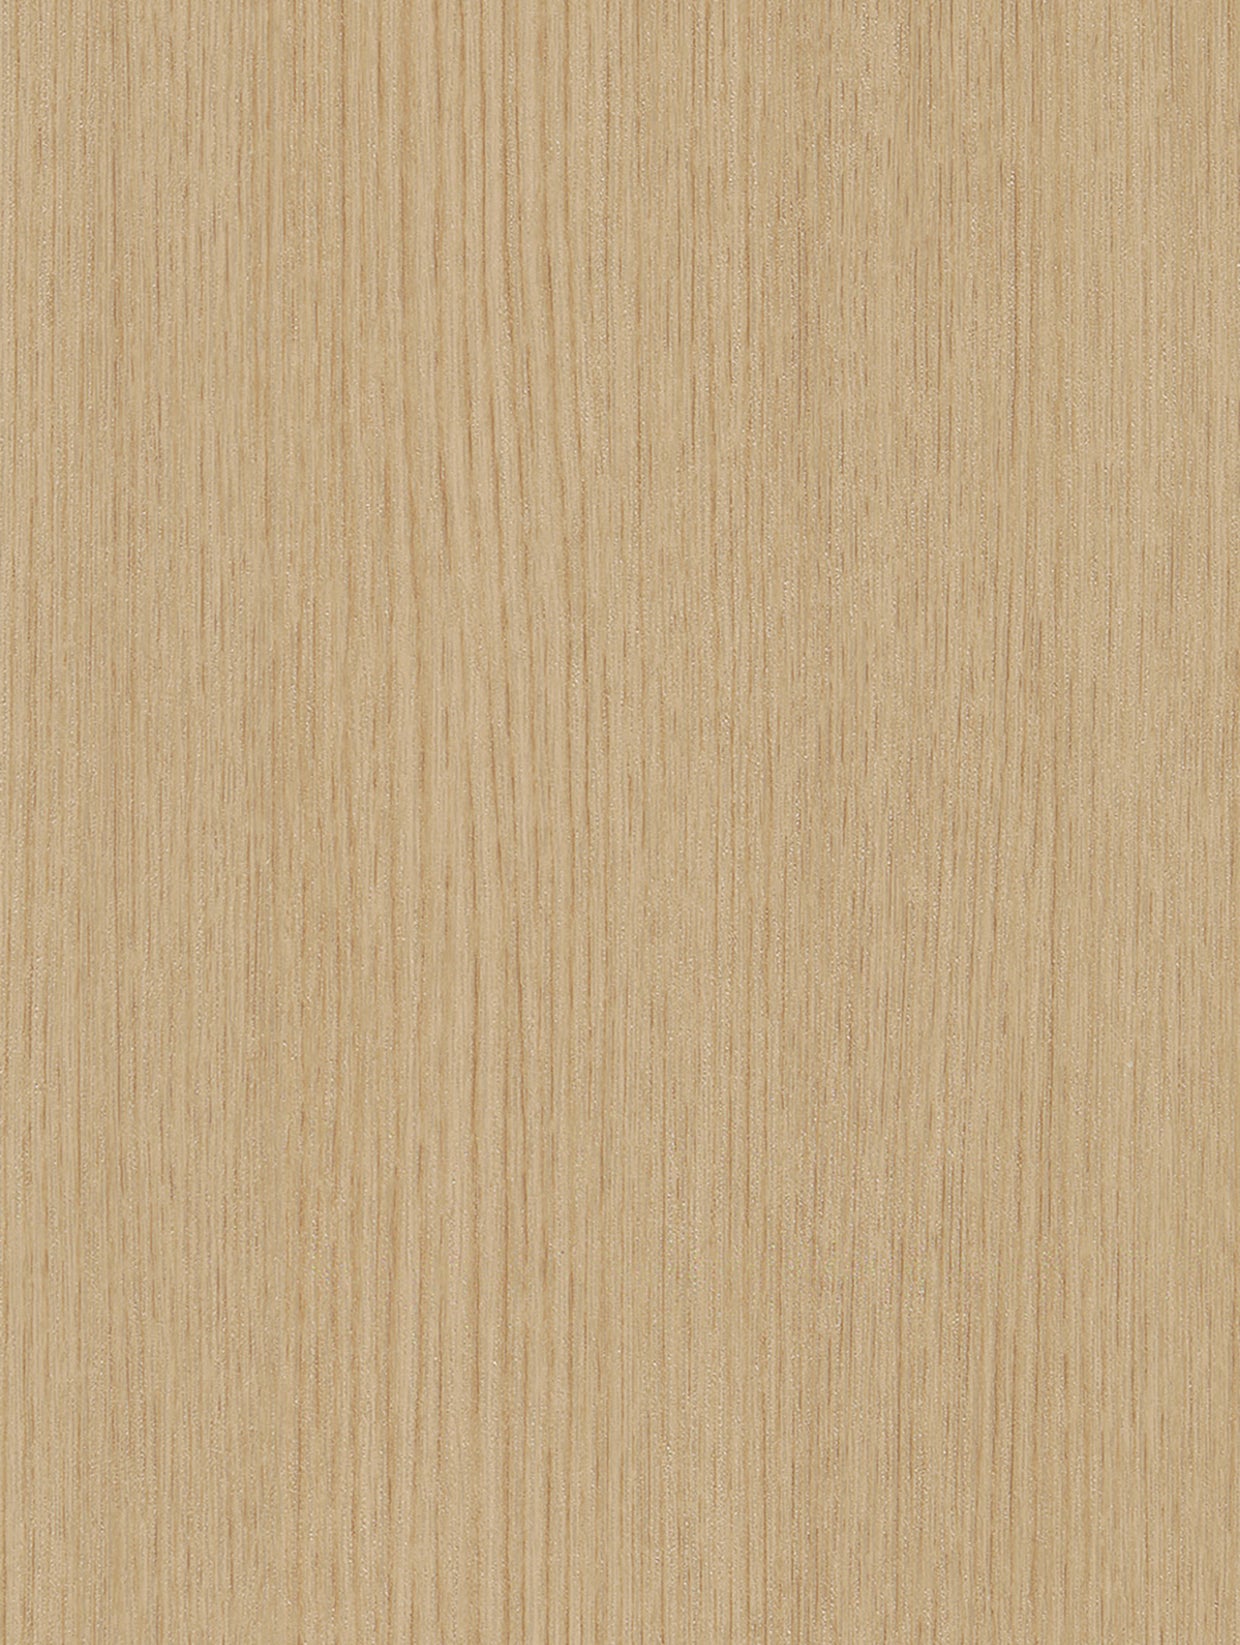 Wood-Light | Holzdekor Hell Rost/Soft/Strukturiert Möbelfolie Selbstklebende Tapete Vinyl Folie für Möbel Wand Regal (100x122cm)